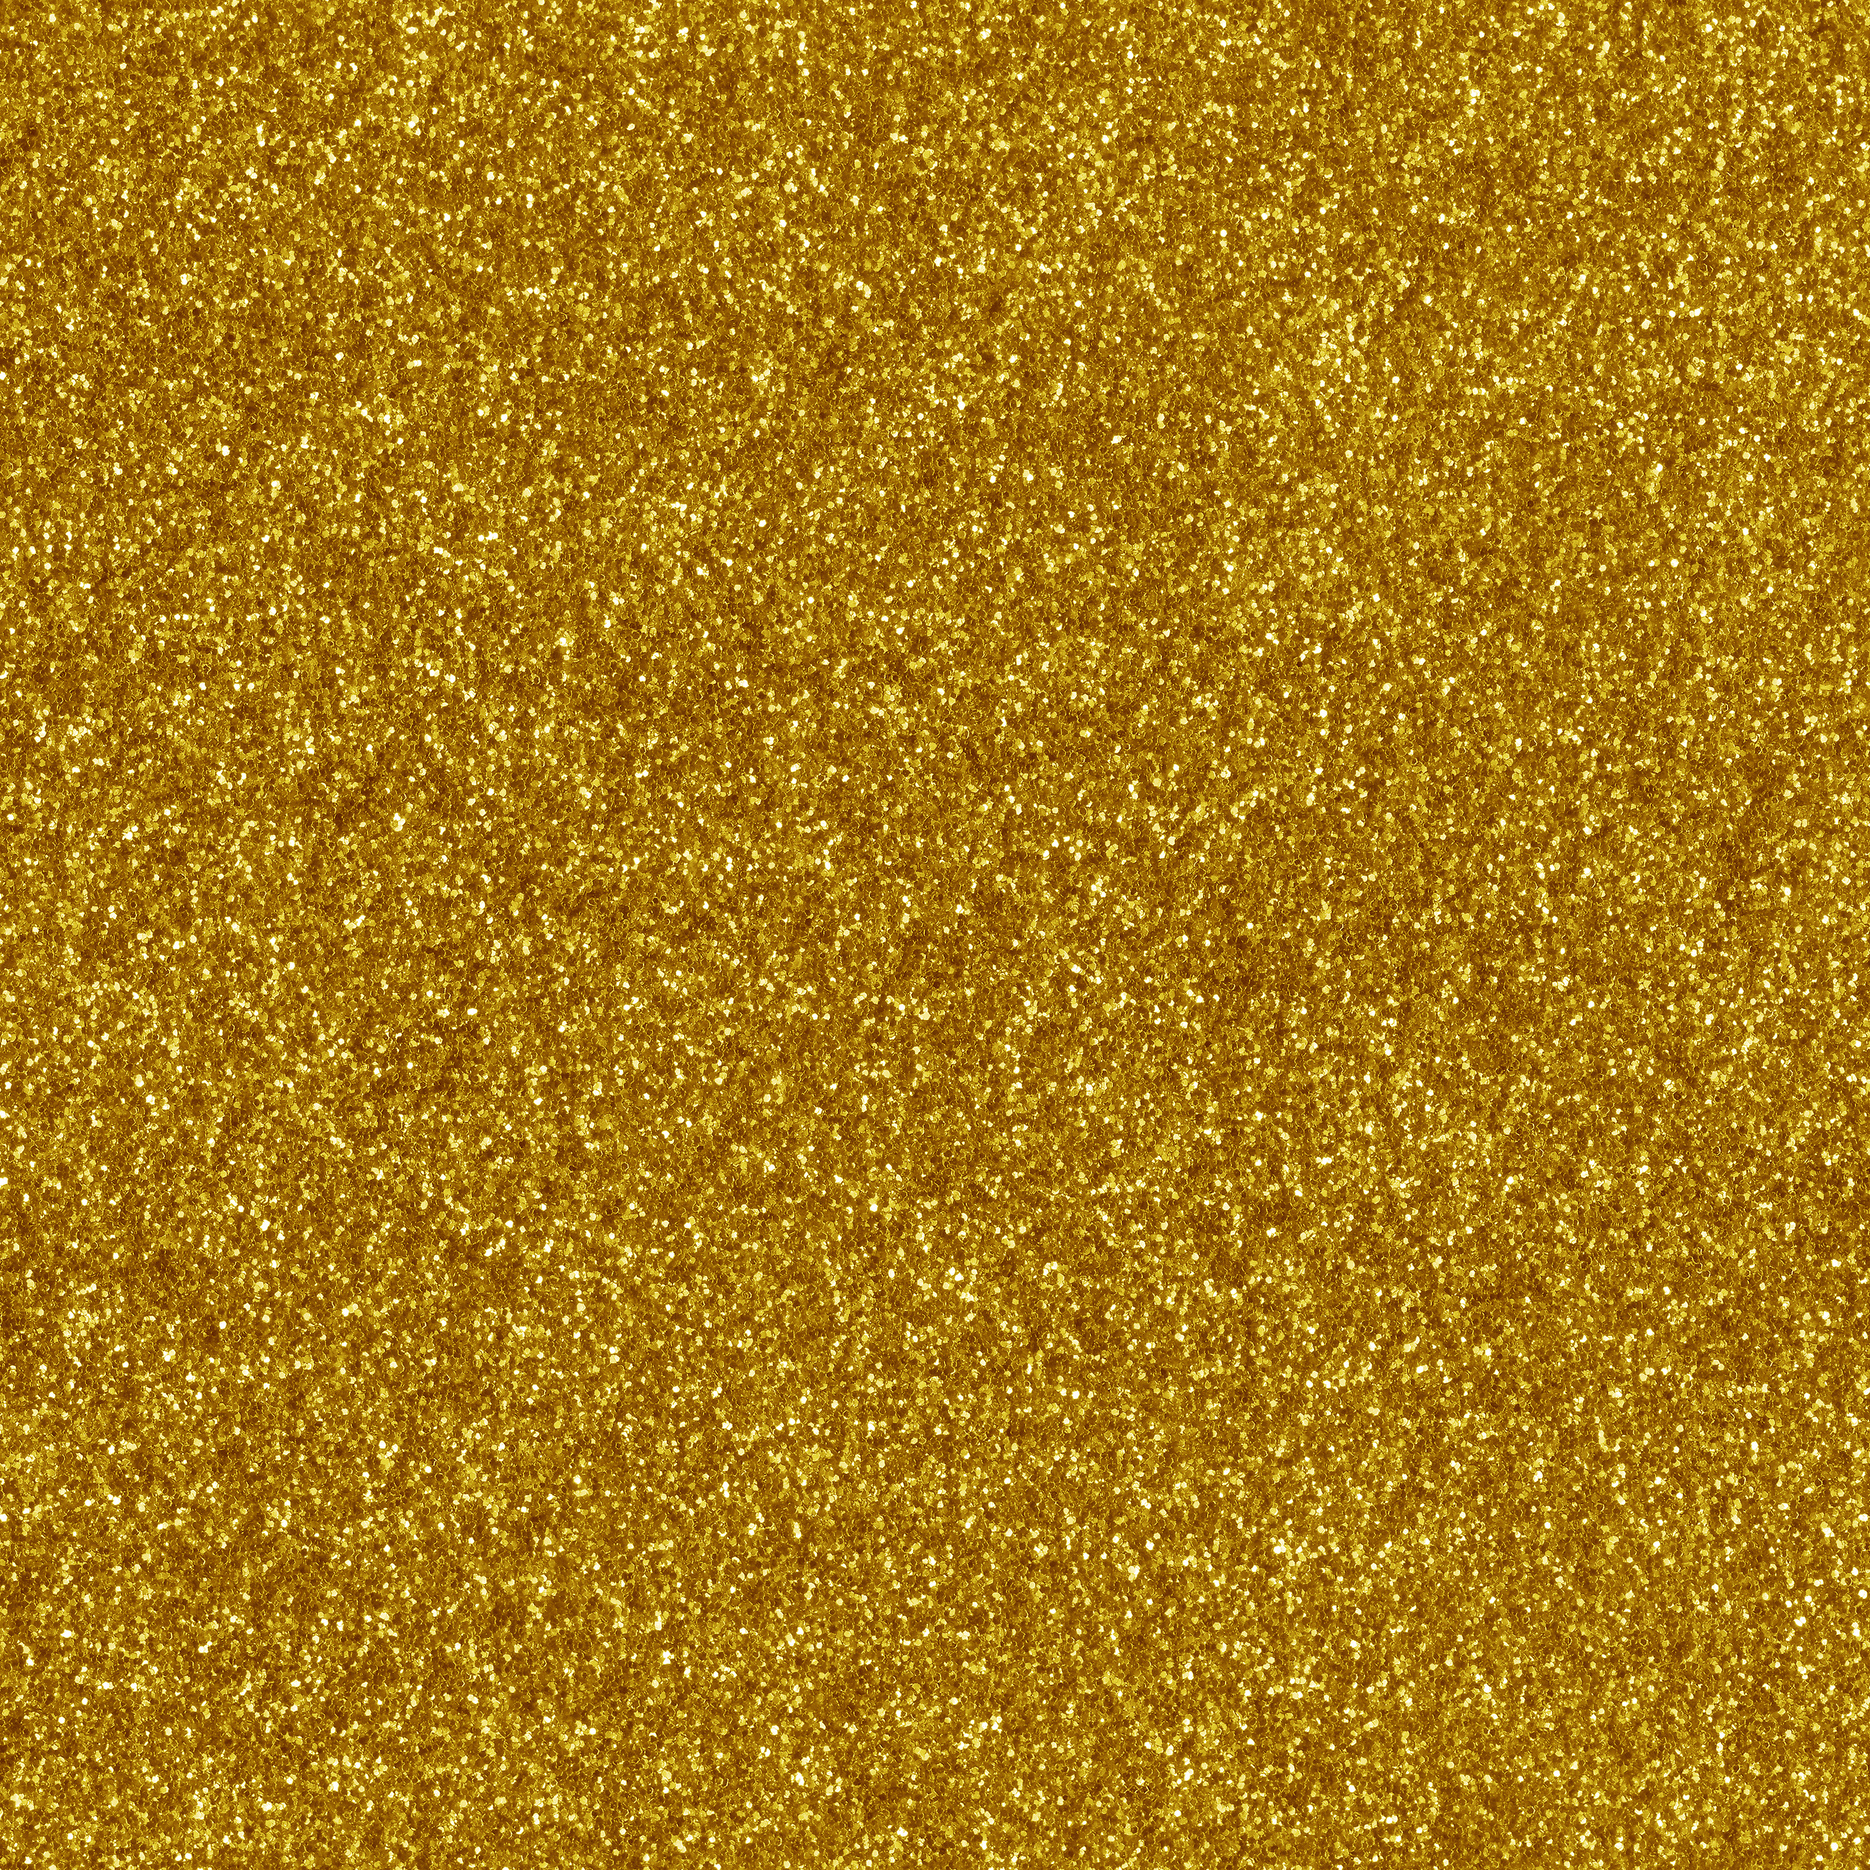 Gold Glitter Texture 